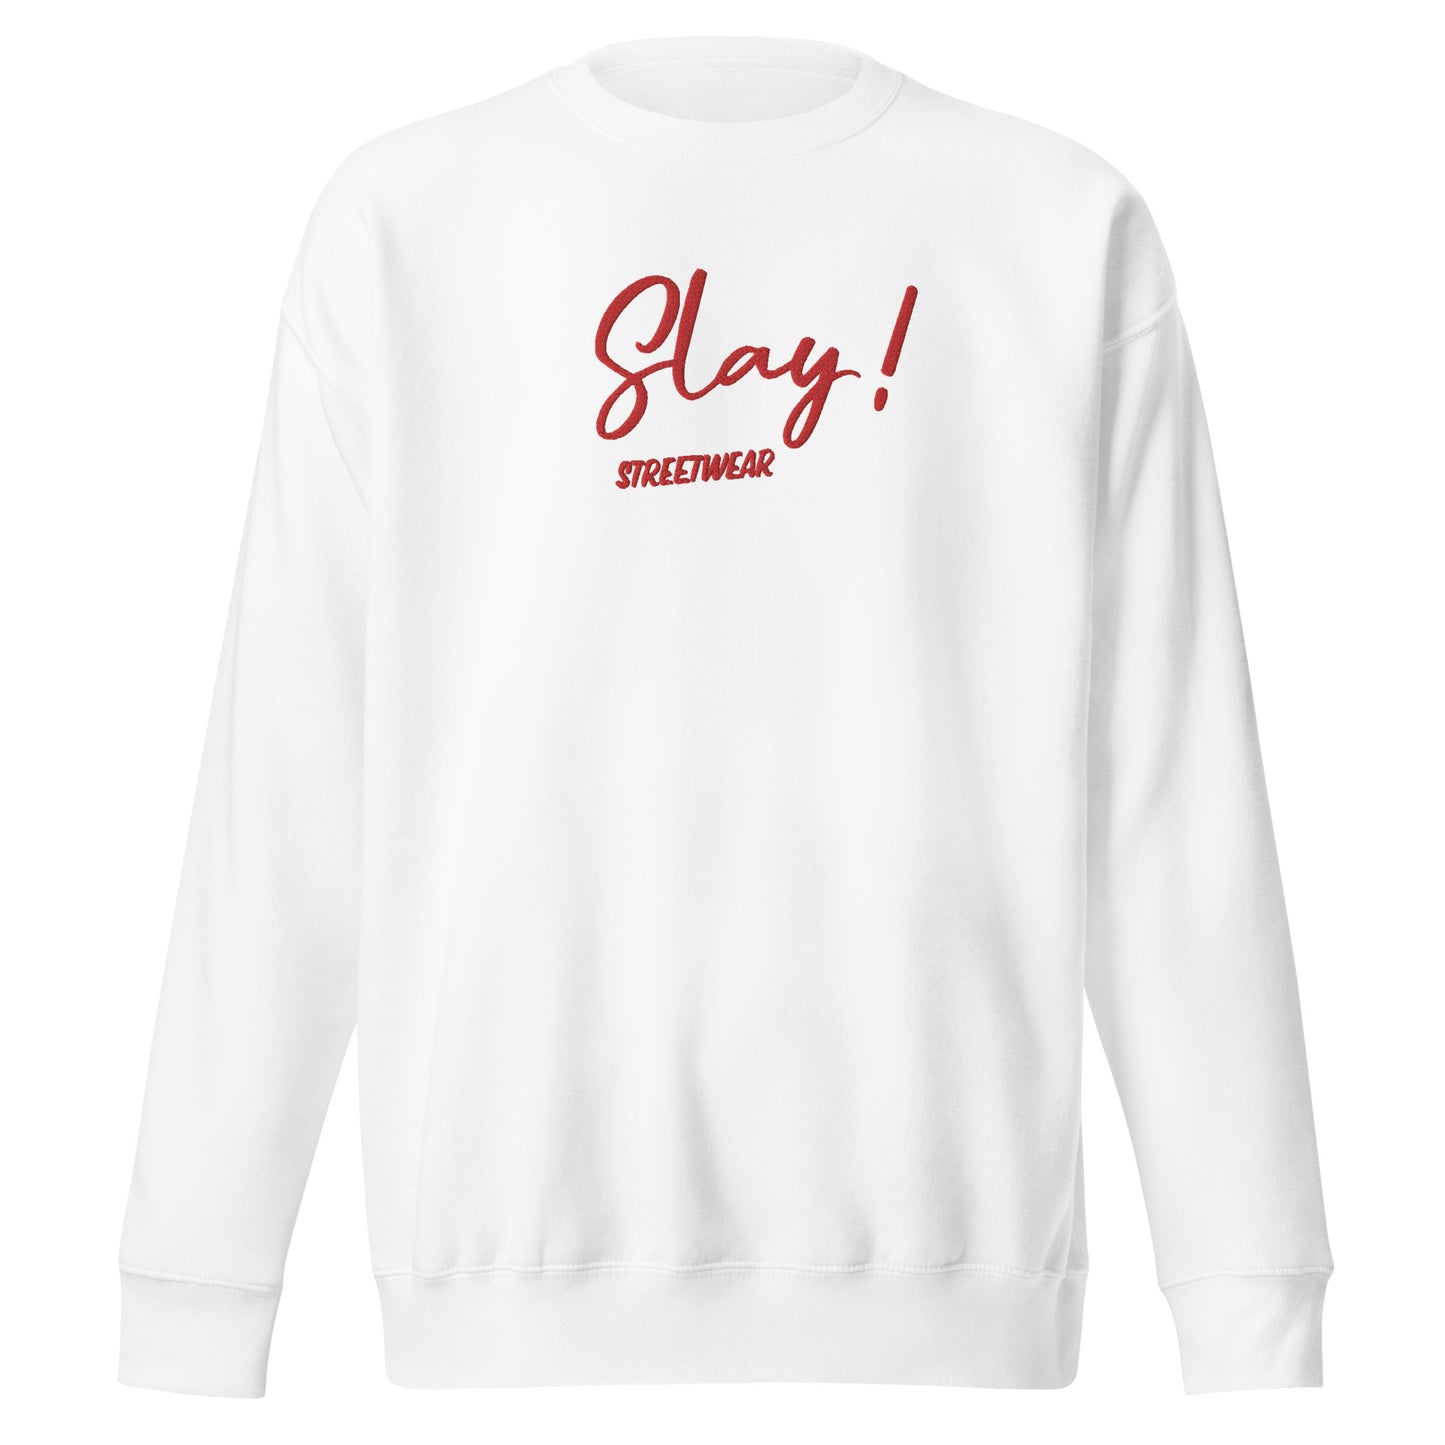 "Slay" women's hooded sweatshirt